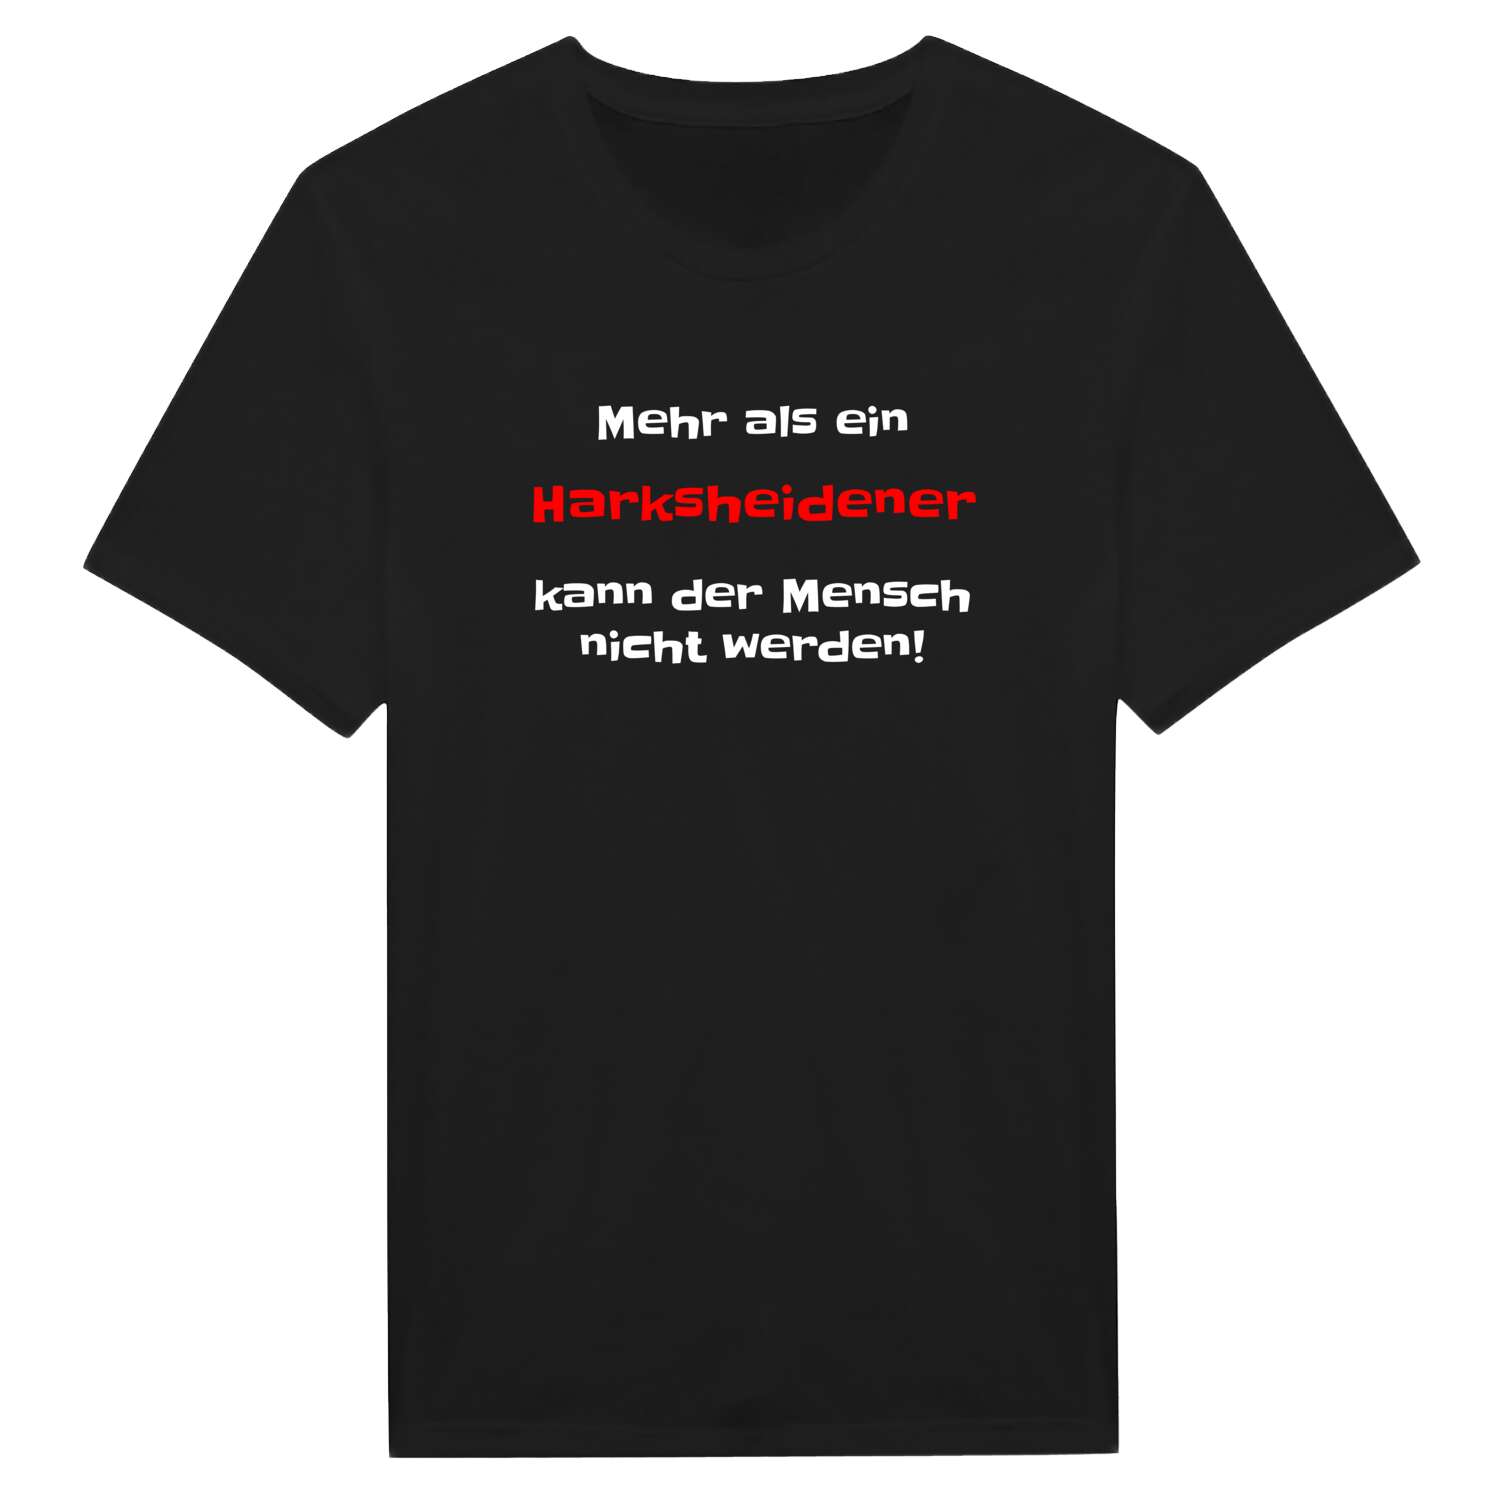 Harksheide T-Shirt »Mehr als ein«